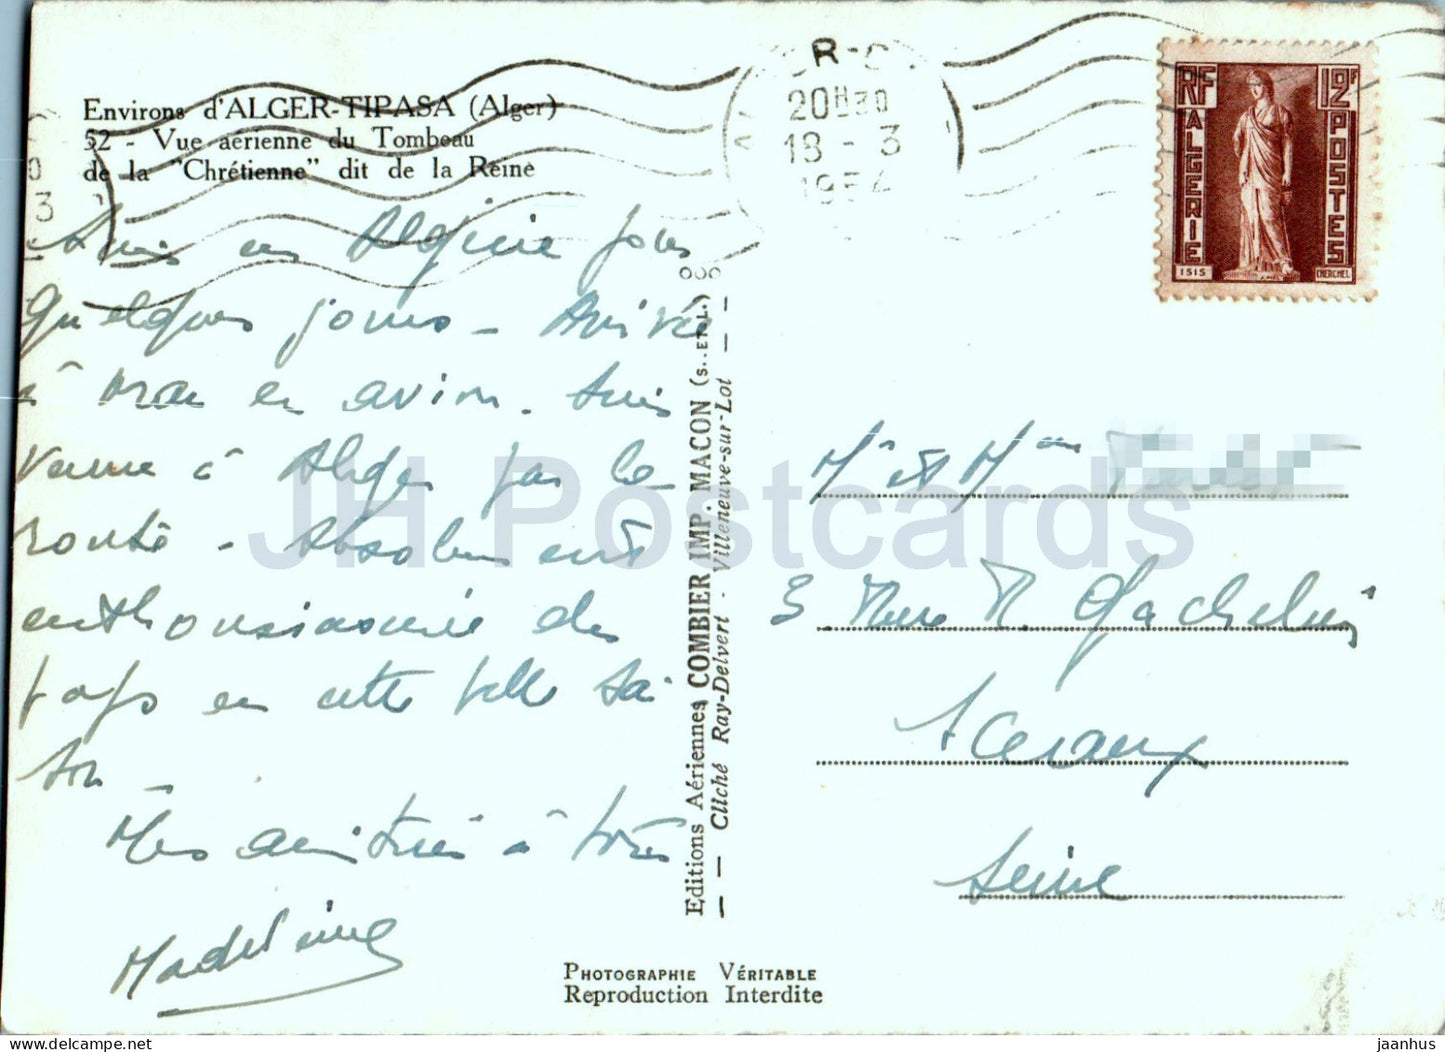 Environs de Alger Tipasa – Königliches Mausoleum von Mauretanien – 52 – alte Postkarte – 1954 – Marokko – gebraucht 